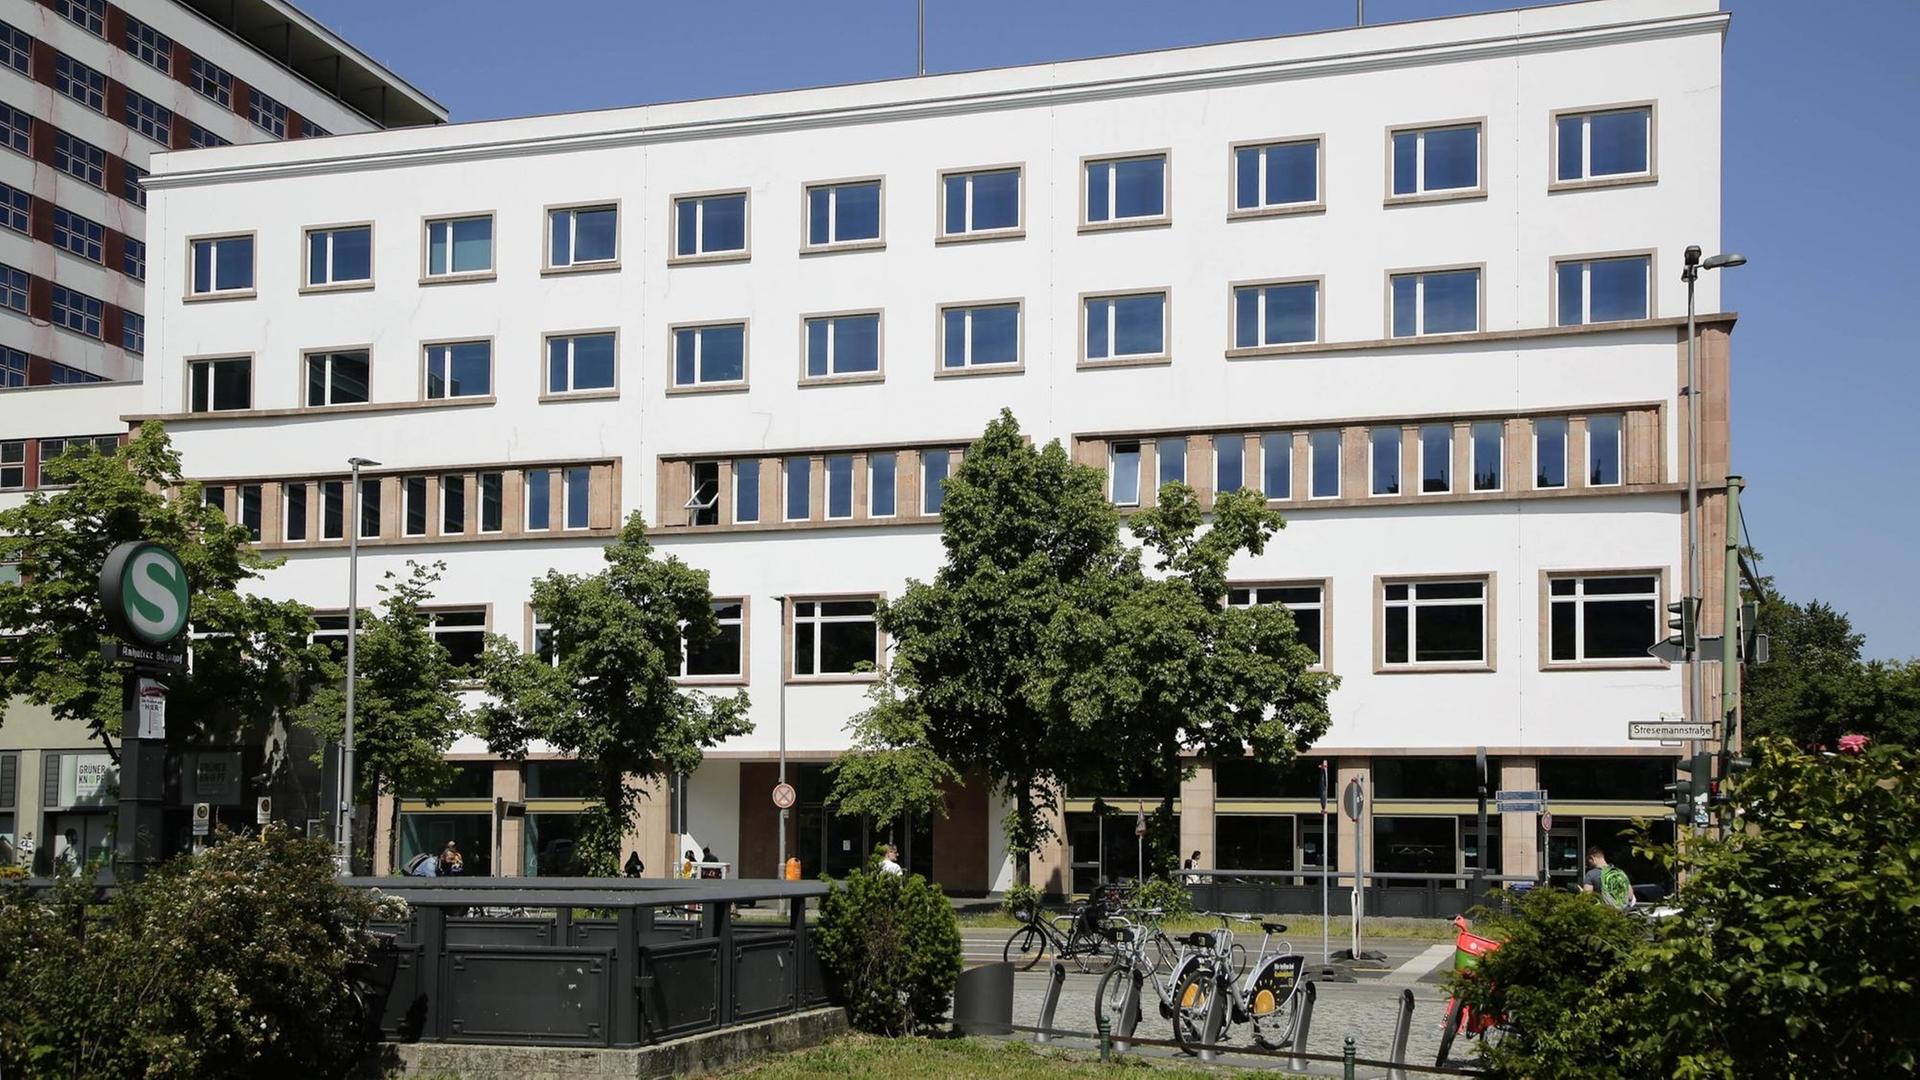 Das Deutschlandhaus in der Stresemannstrasse in Berlin, ist der kuenftige Sitz des Dokumentationszentrums der Stiftung Flucht, Vertreibung, Versöhnung. Offizielle Eröffnung des Dokumentationszentrums ist am 21. Juni 2021.